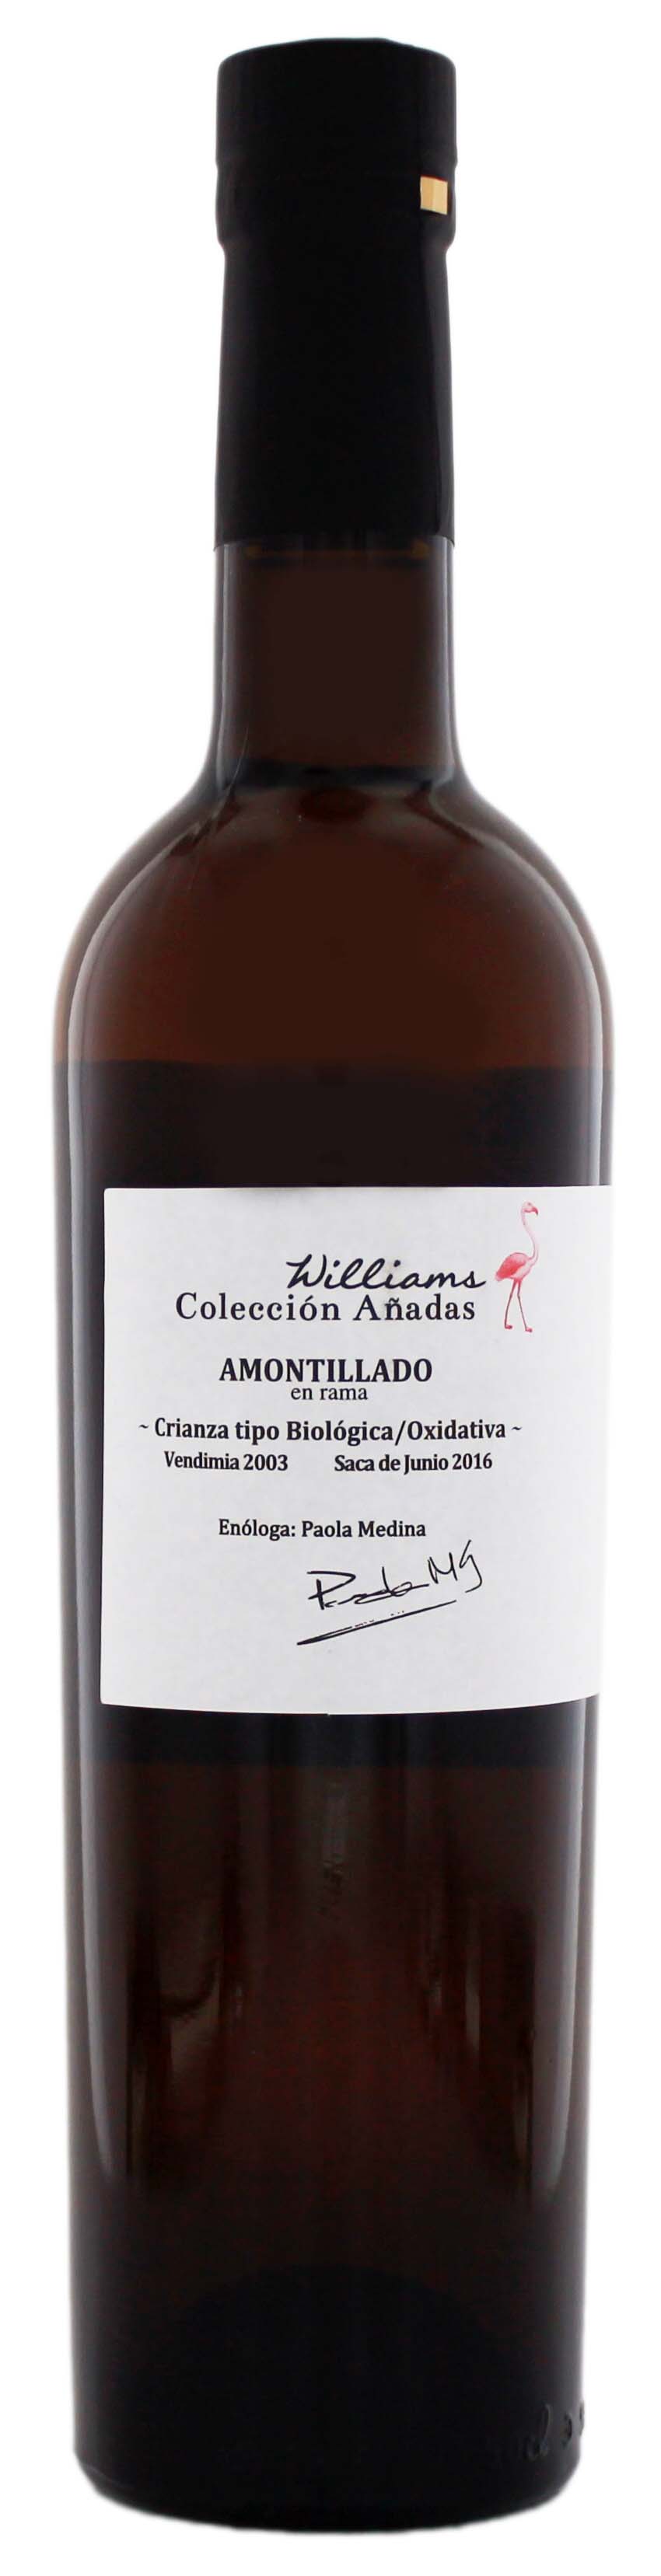 Williams Coleccion Anadas Amontillado En Rama 2003 Sherry 0,5L